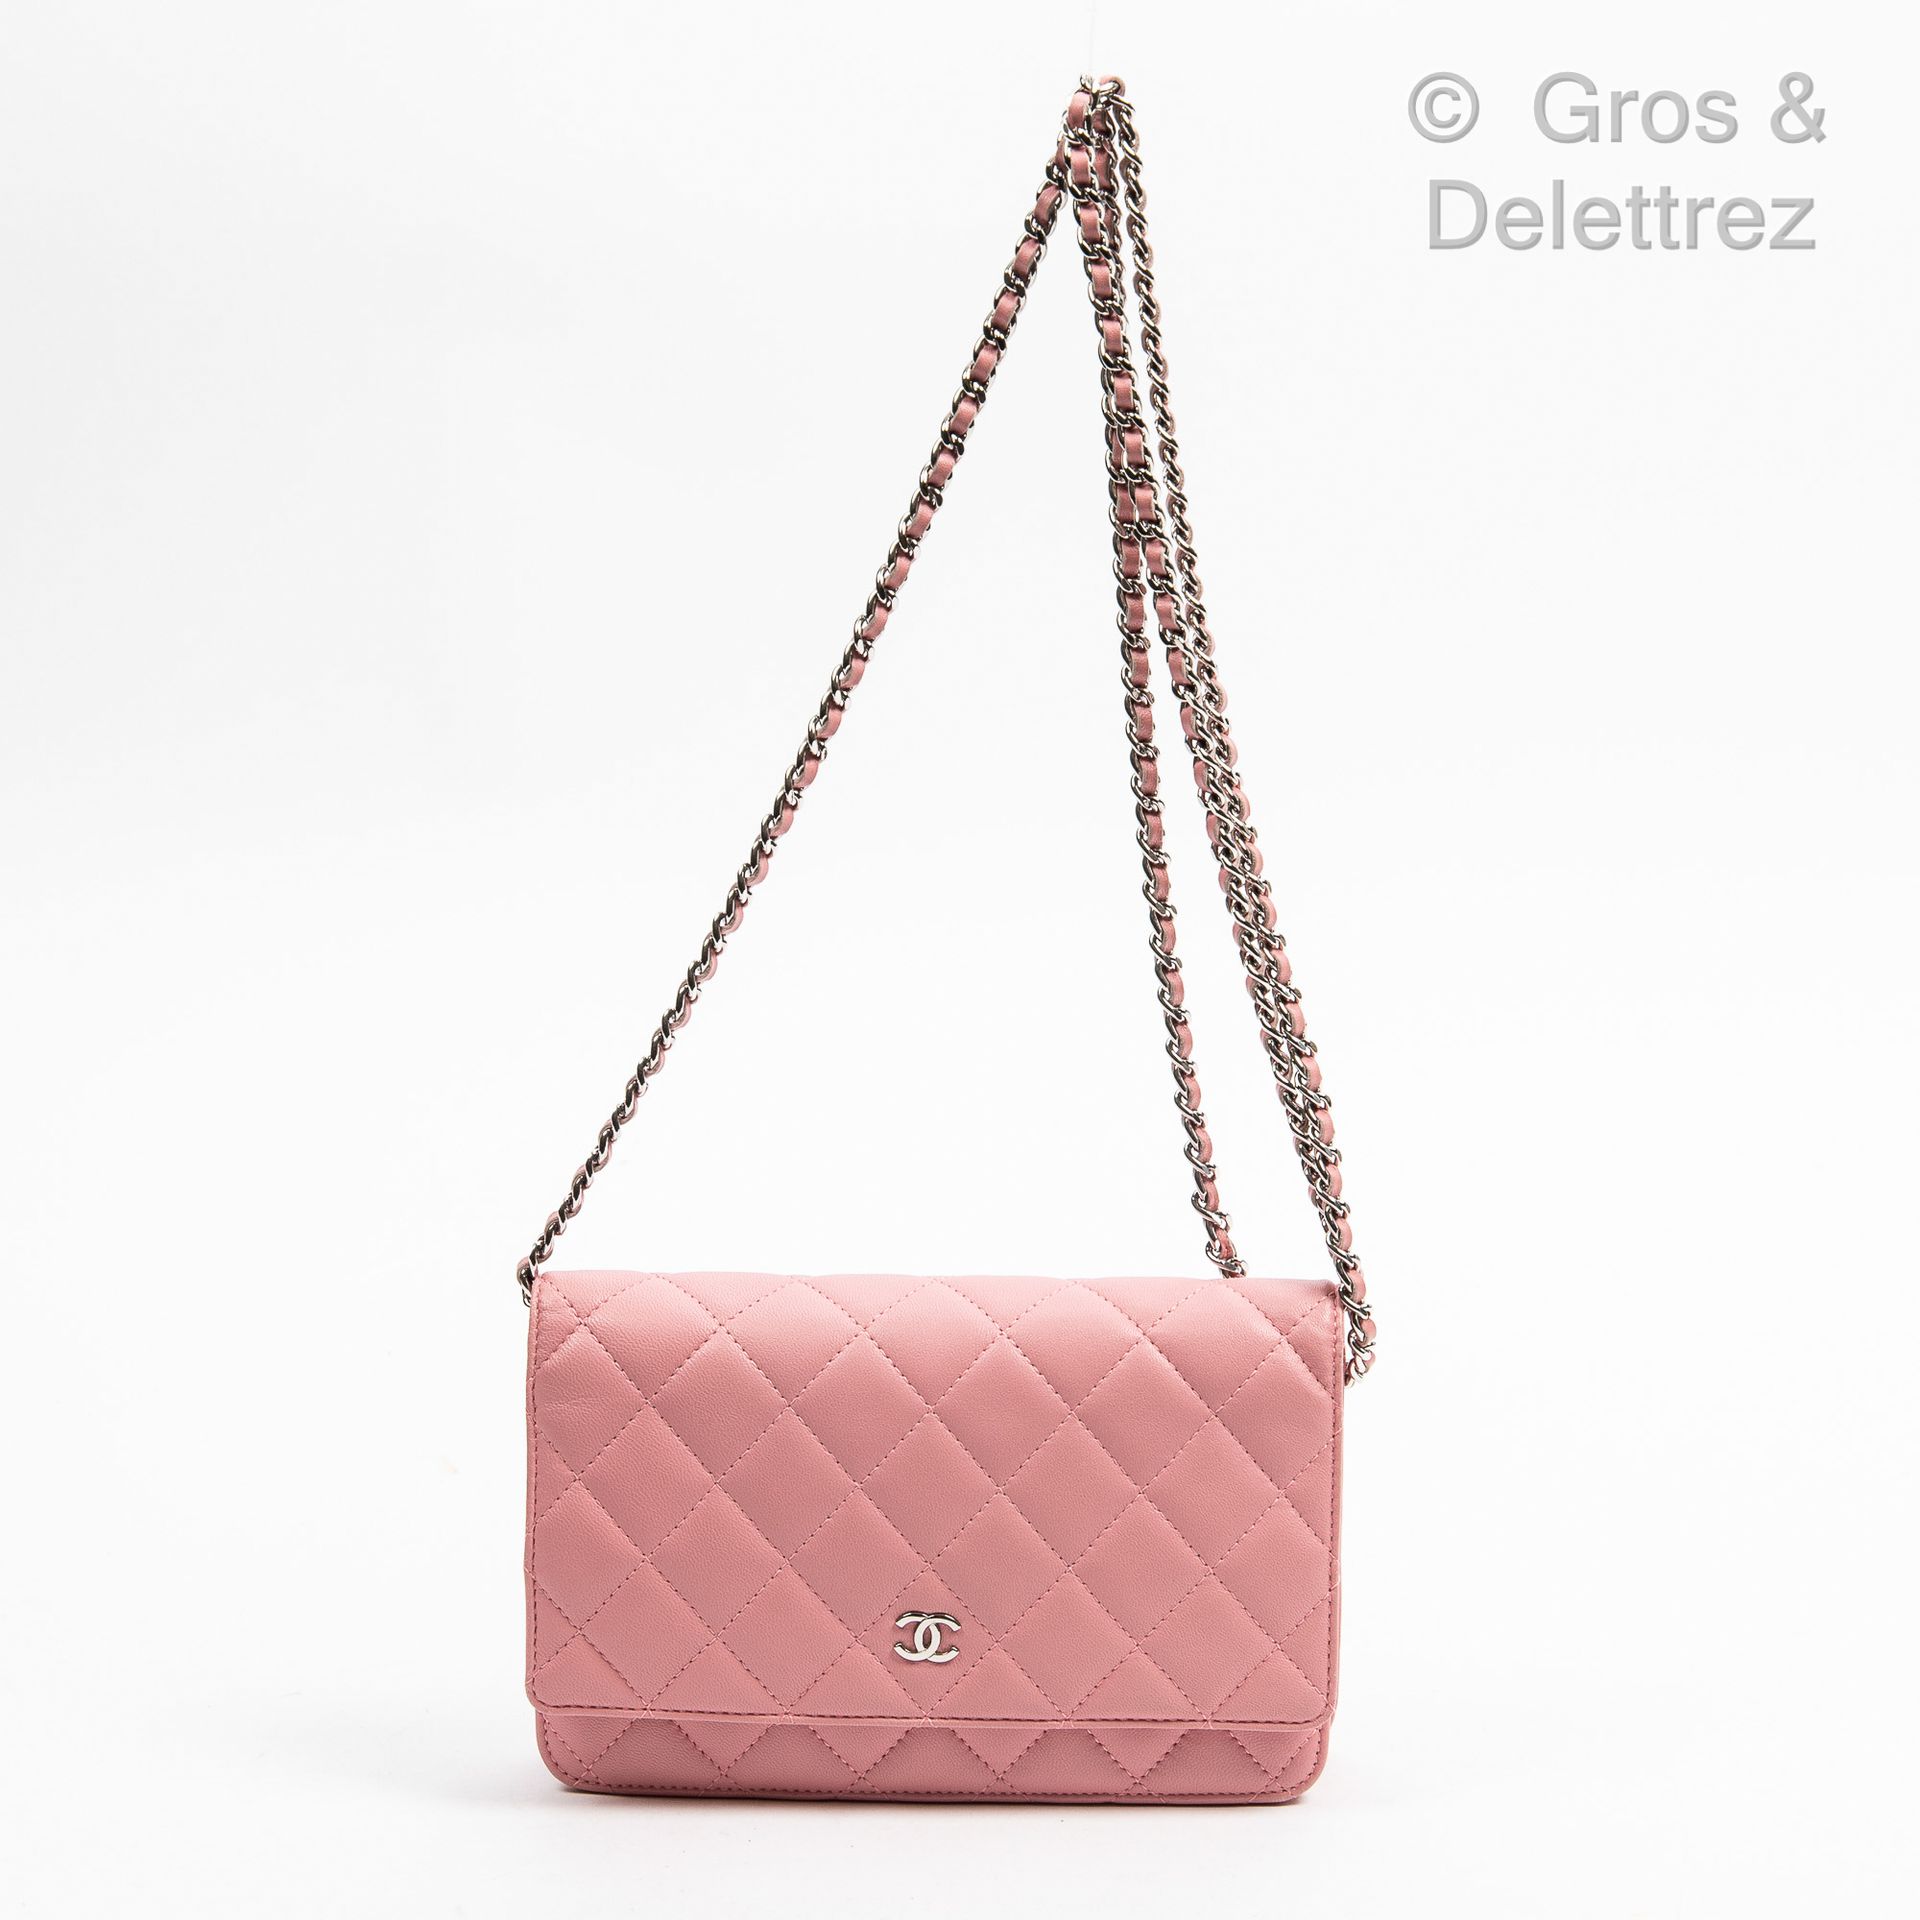 CHANEN Jahr 2011

Tasche "Brieftasche an Kette", 19 cm, aus rosa Lammleder, inne&hellip;